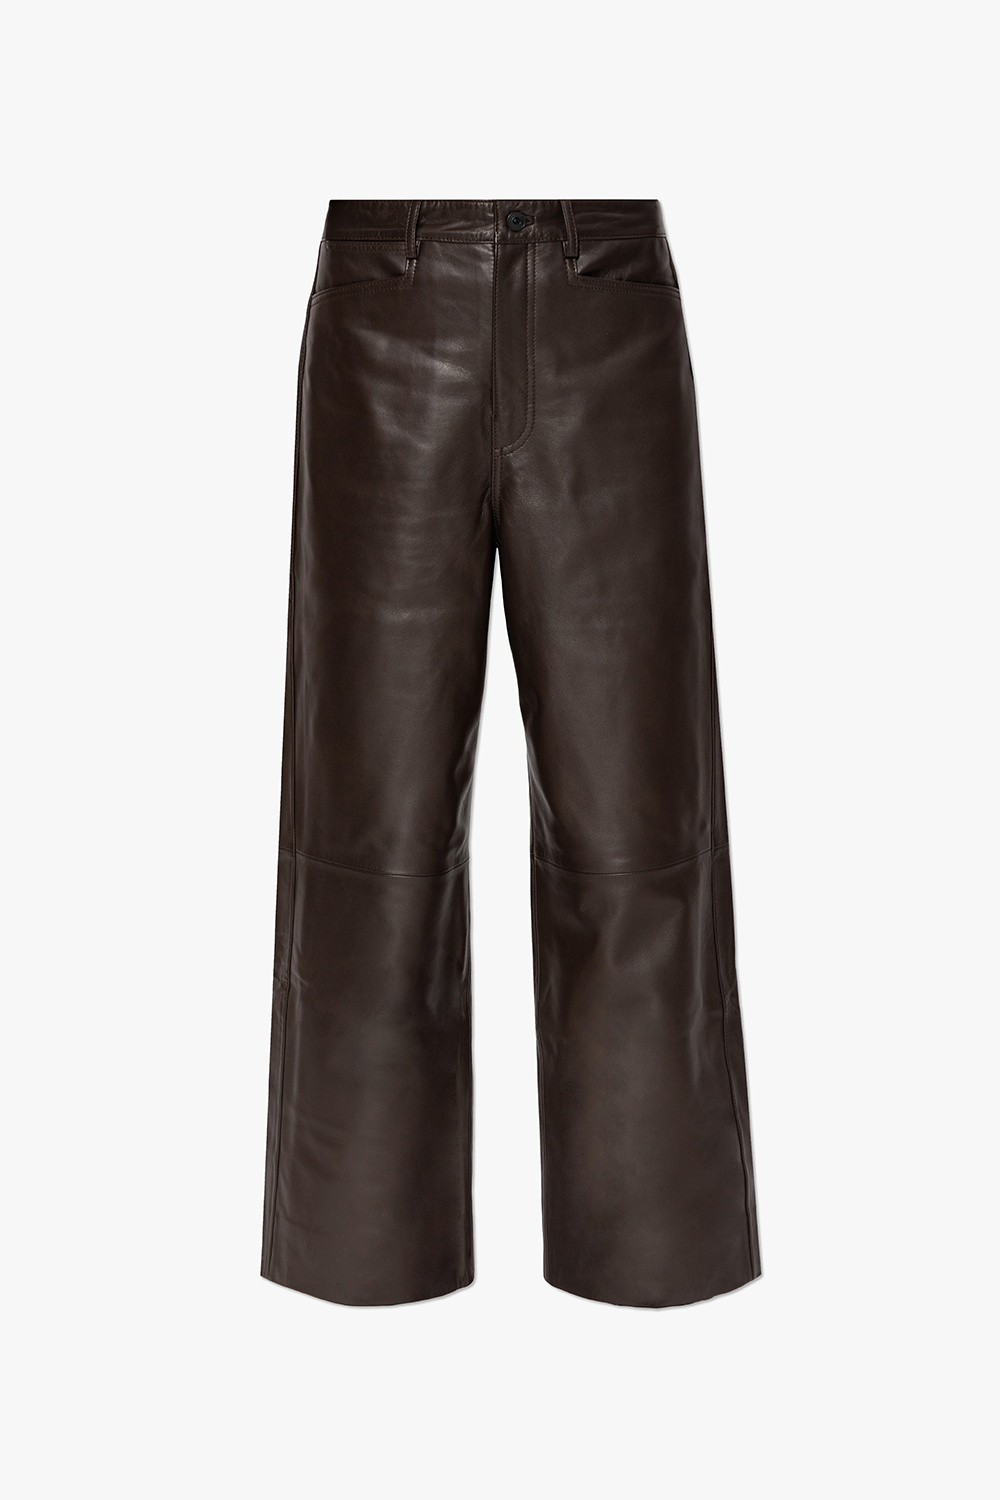 New Look Petite faux leather wet look leggings in black